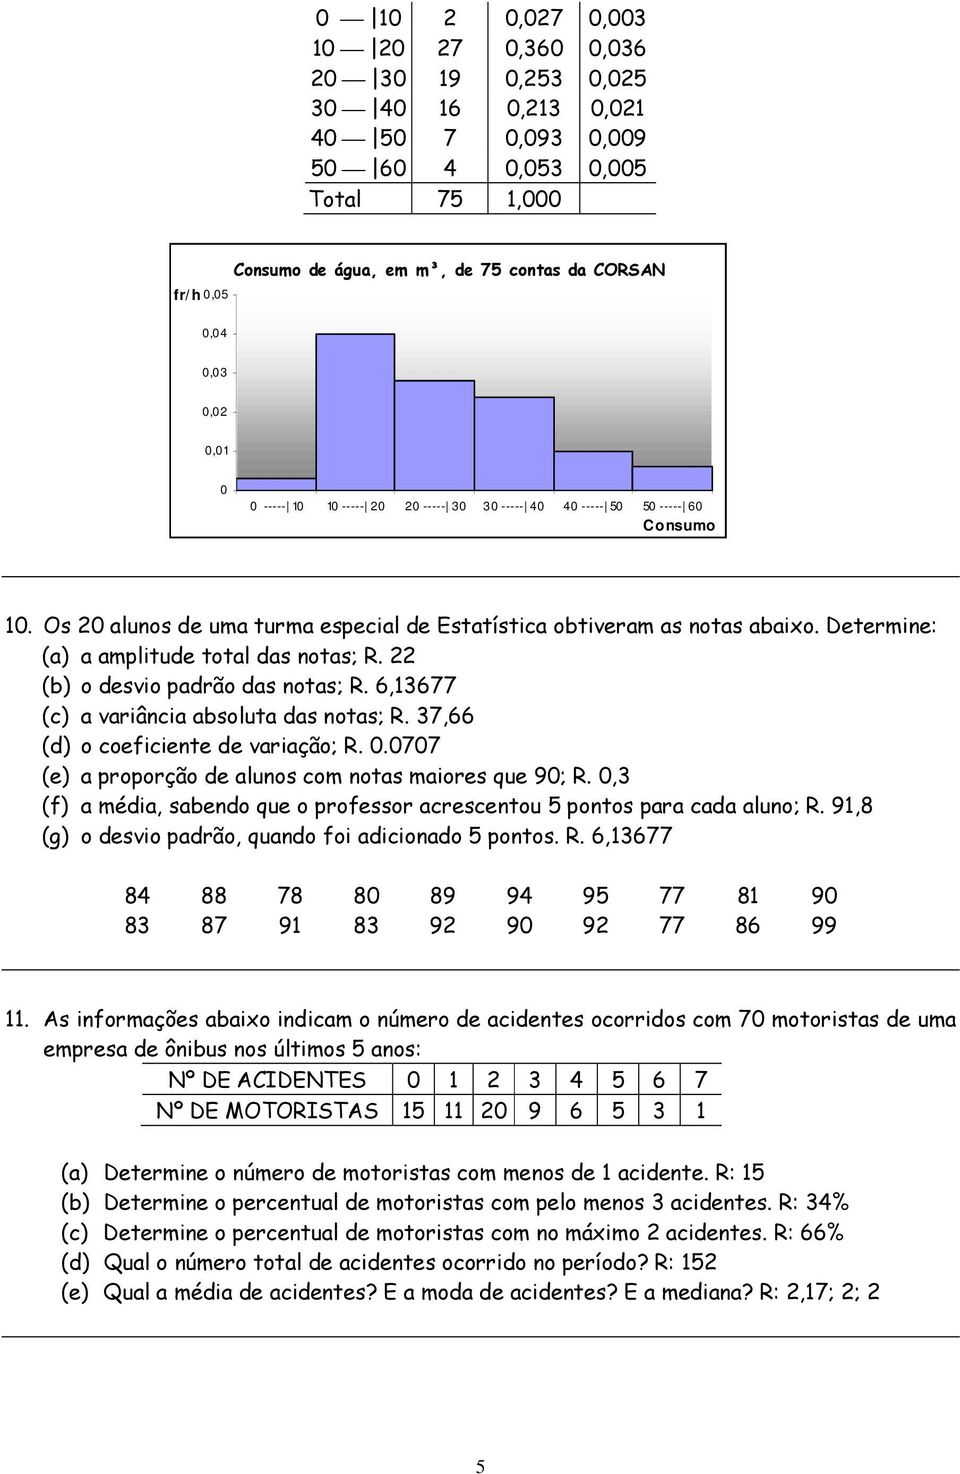 Determine: (a) a amplitude total das notas; R. 22 (b) o desvio padrão das notas; R. 6,13677 (c) a variância absoluta das notas; R. 37,66 (d) o coeficiente de variação; R. 0.